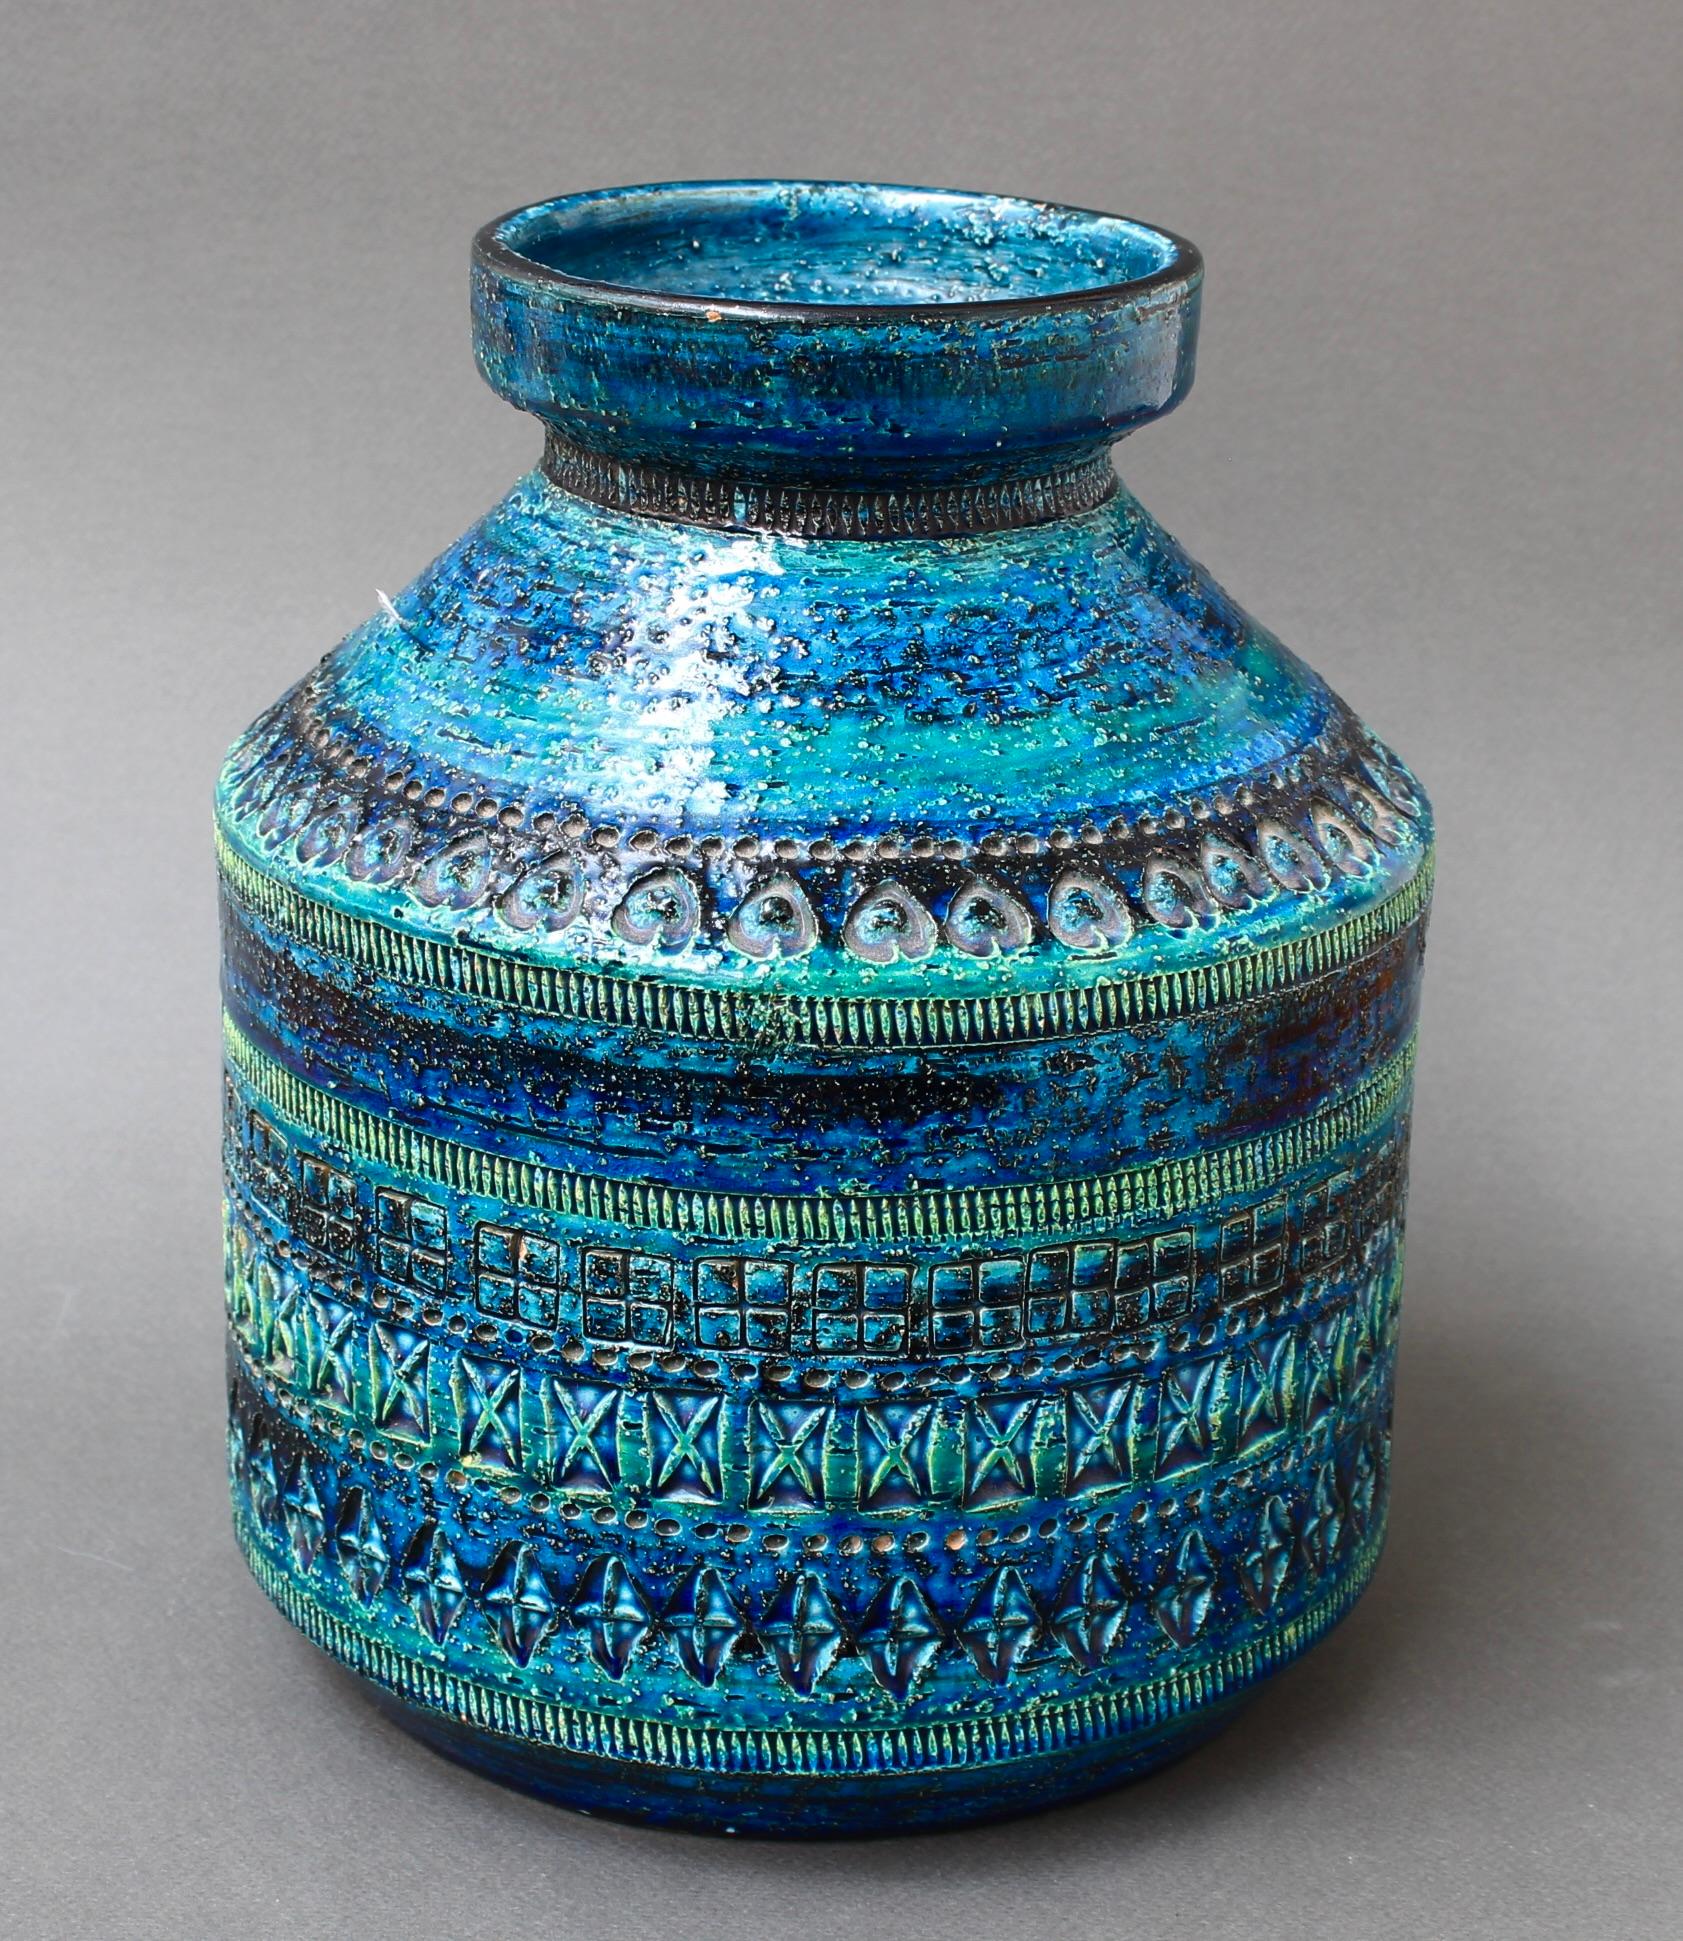 Vintage Vase aus italienischer Keramik in Rimini Blu mit geometrischem Motiv von Aldo Londi für Bitossi (ca. 1960er Jahre). Rimini Blu wurde 1959 von Aldo Londi erfunden und wurde schnell zum Markenzeichen des Unternehmens. Es wurde auf eine